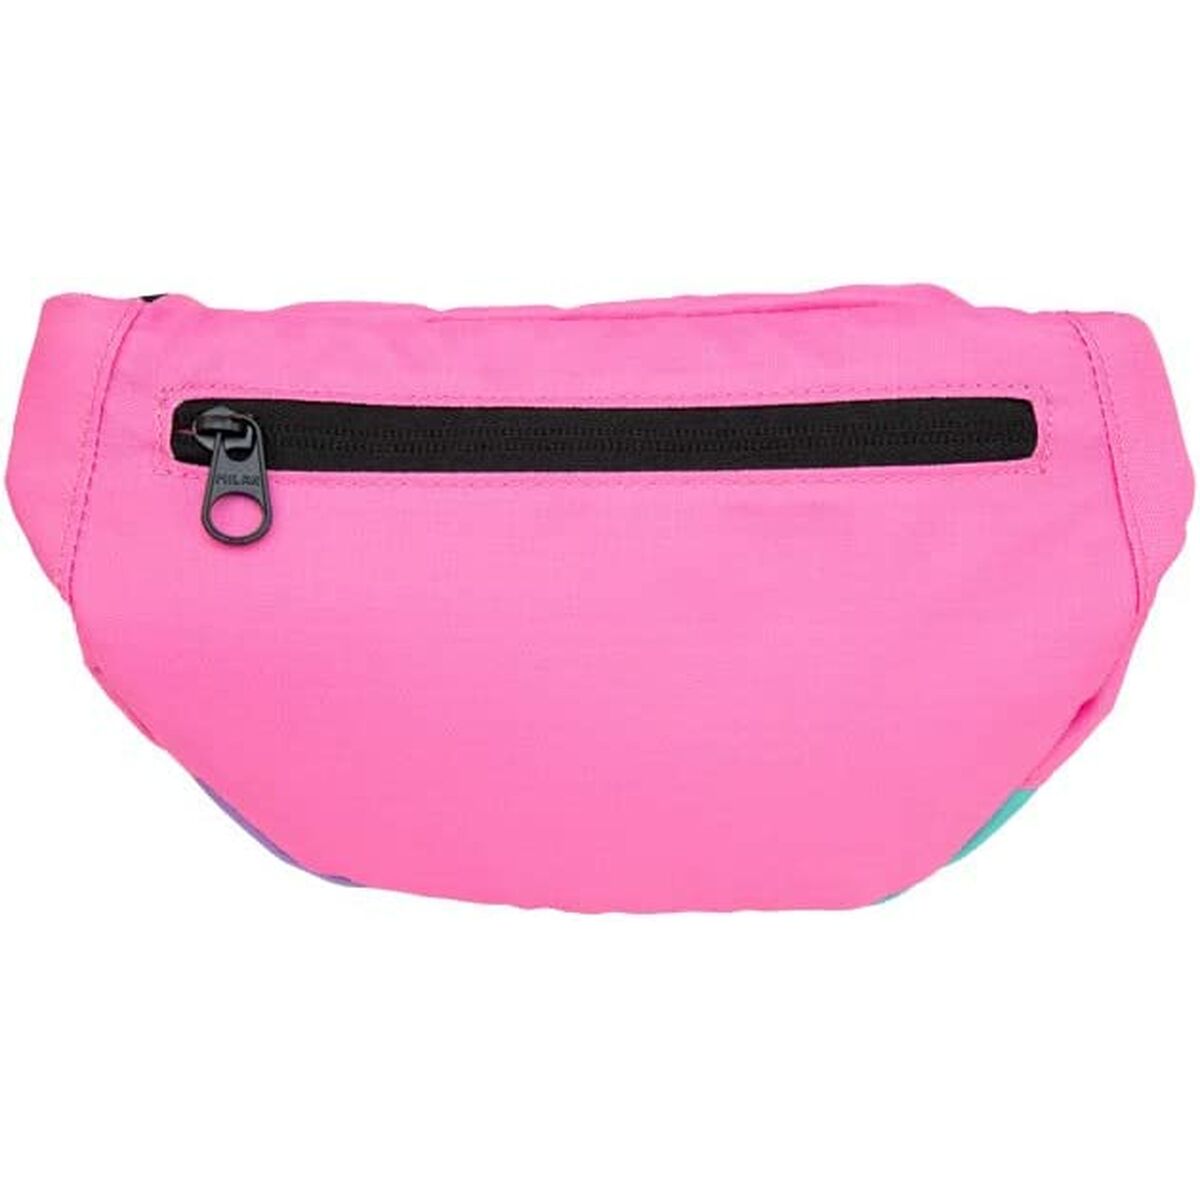 Belt Pouch Milan Sunset Pink (30 x 15 x 8,5 cm)